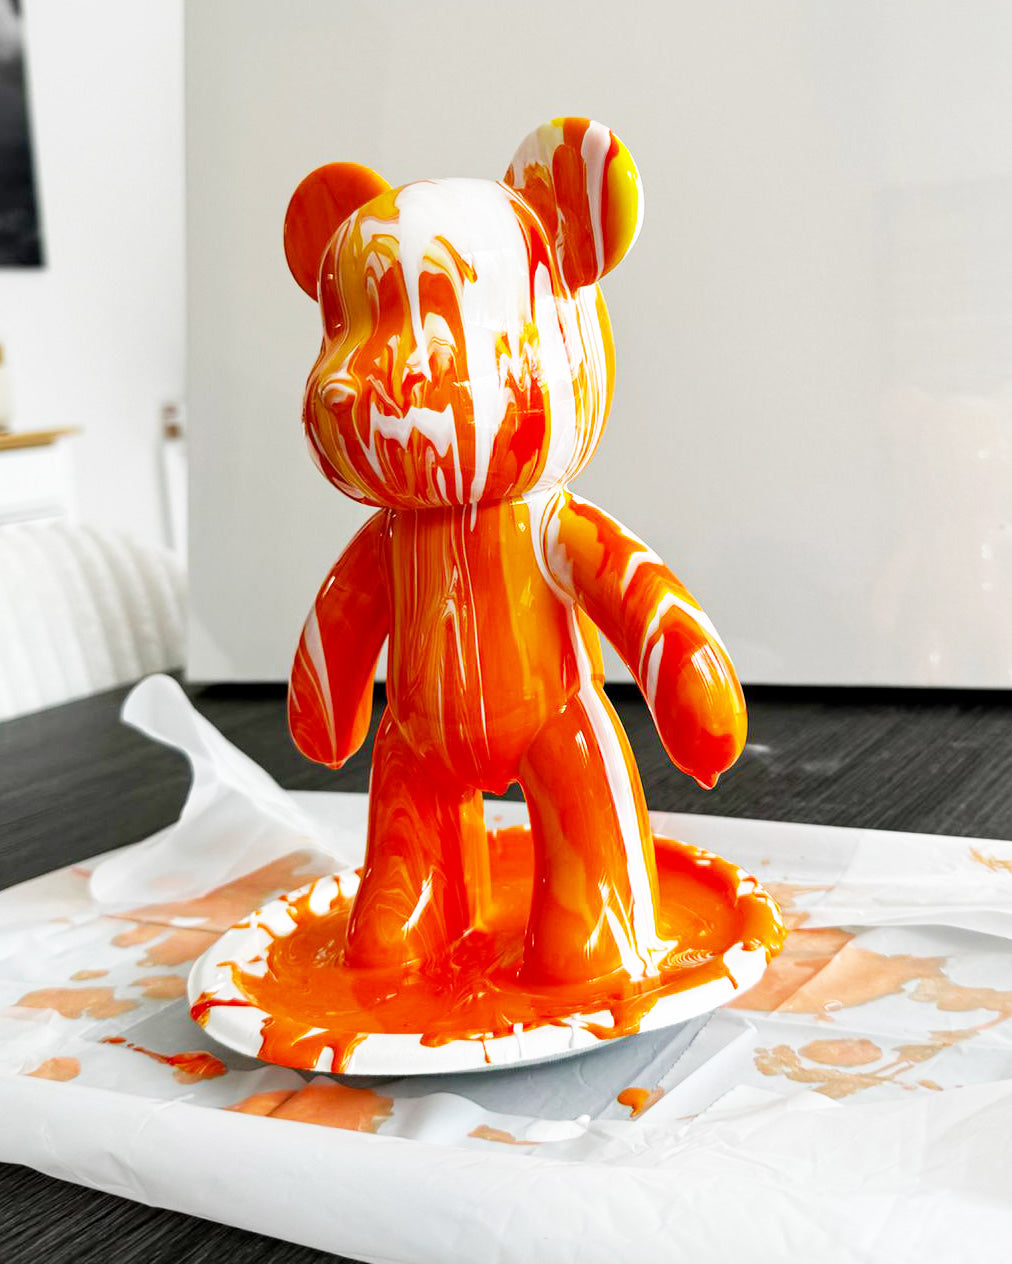 Kit de peinture pouring fluide art - Ours Teddy Bear Orange/Jaune/Blanc JOY!